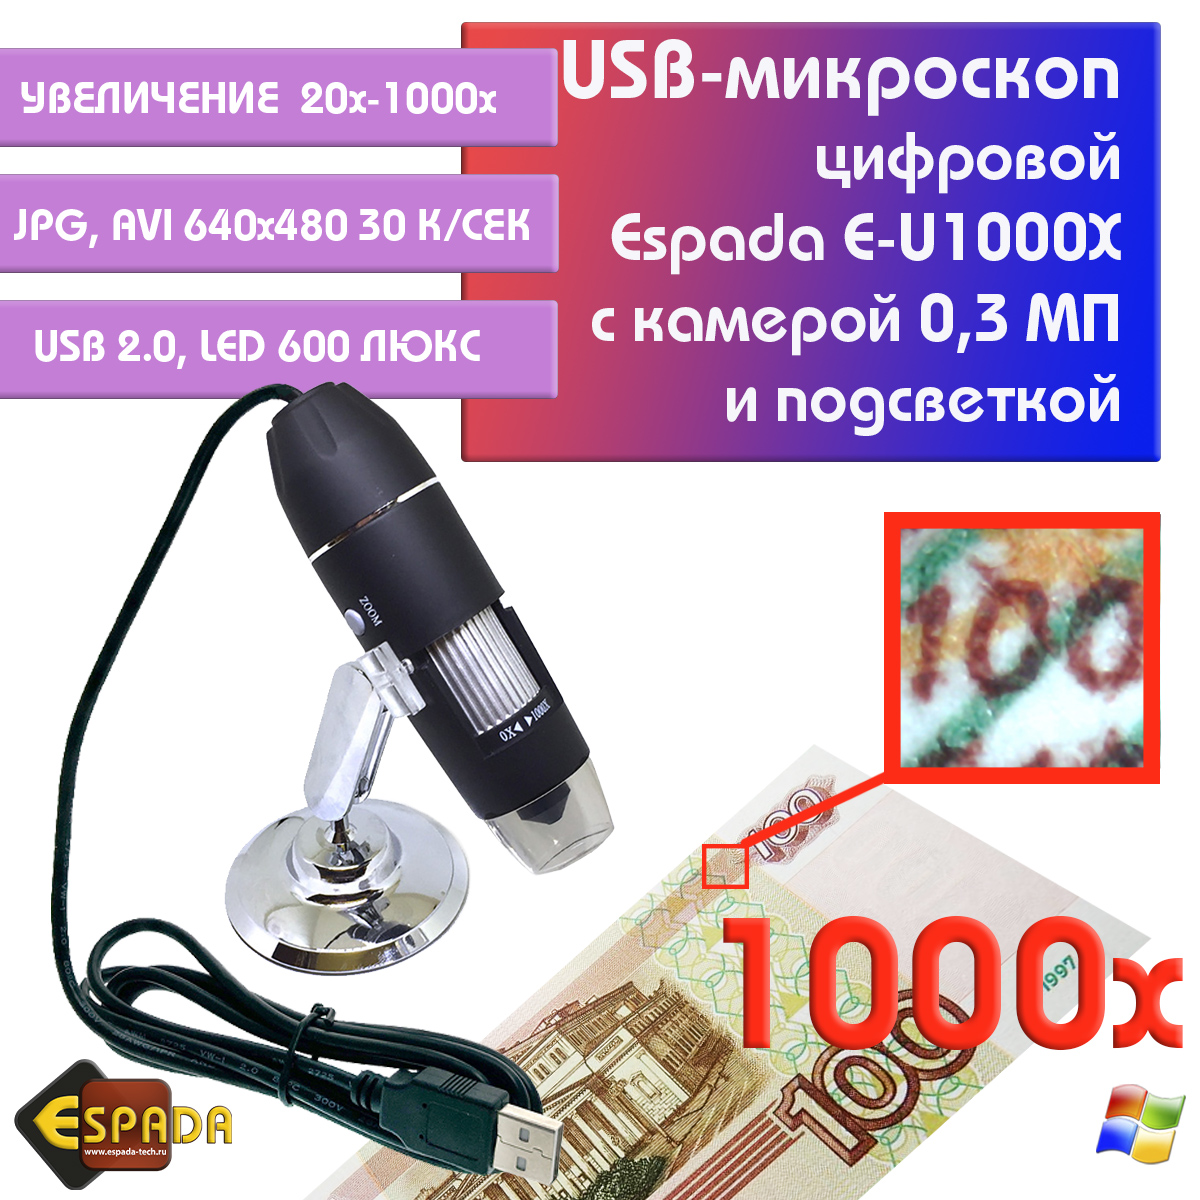 Портативный цифровой USB-микроскоп Espada E-U1000X c камерой 0,3 МП и увеличением 1000x микроскоп с usb цифровой icartool 2 мпикс 50–1000x ic v317